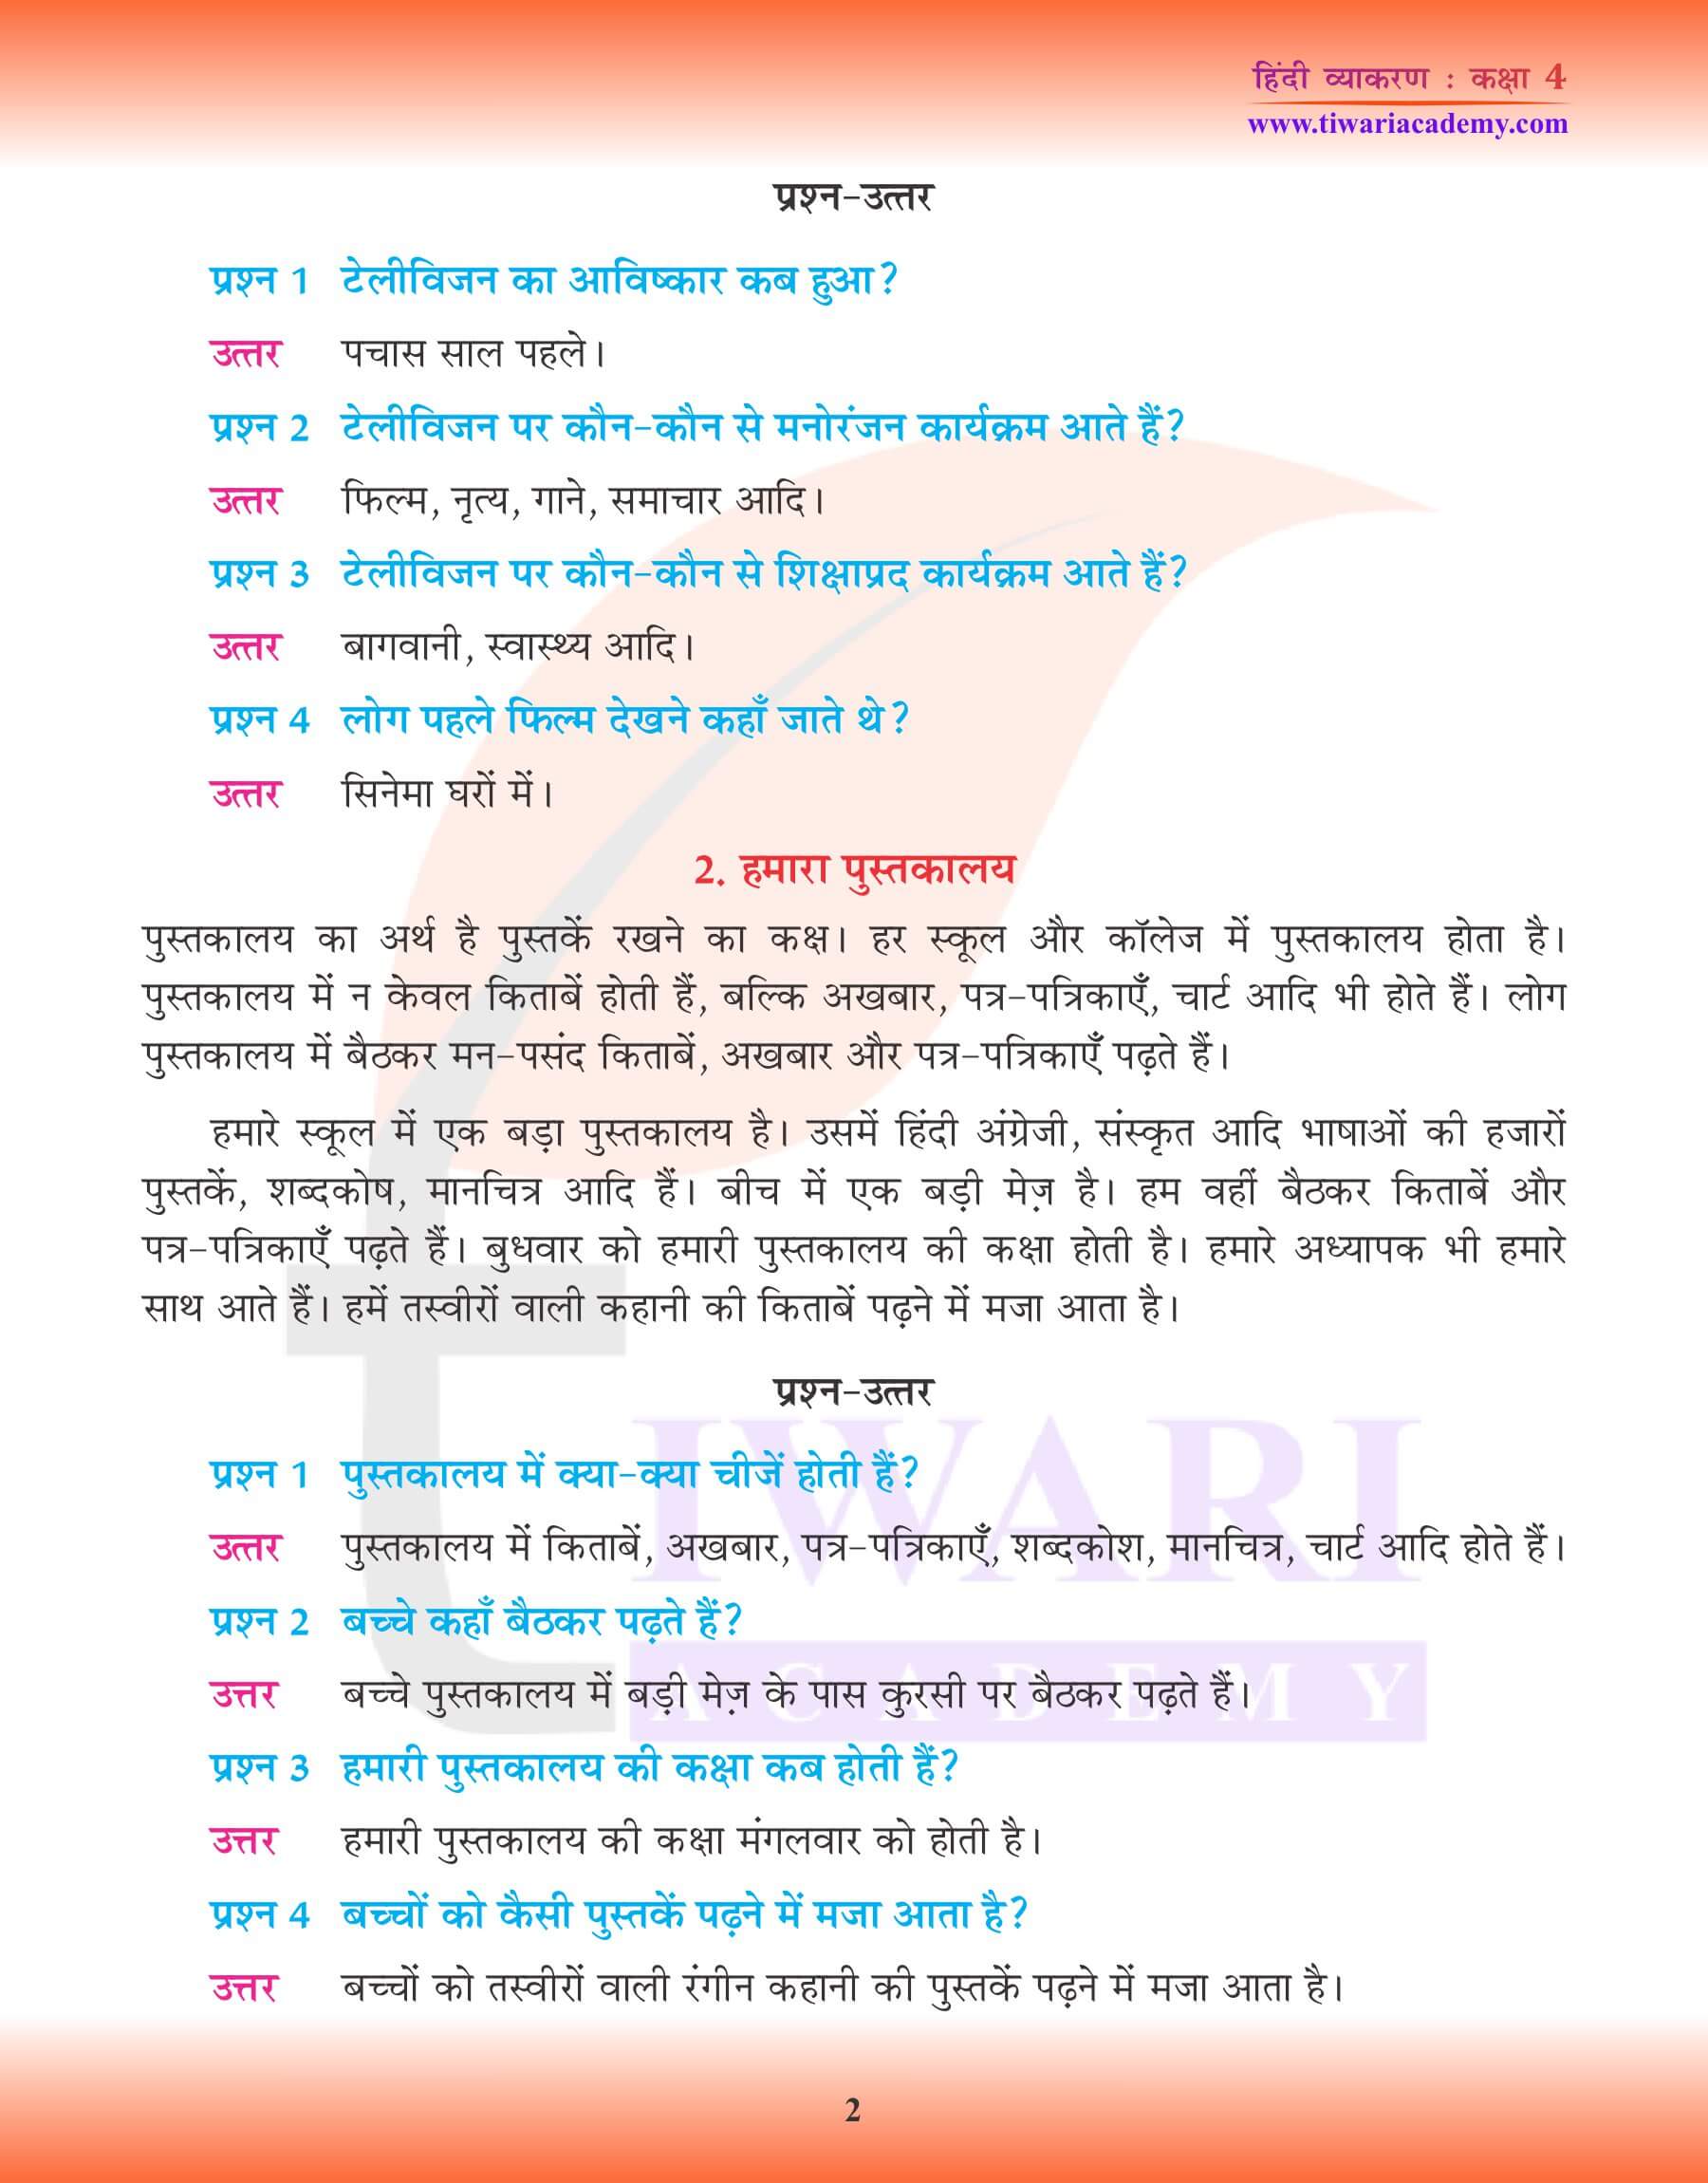 कक्षा 4 हिंदी व्याकरण में अपठित गद्यांश